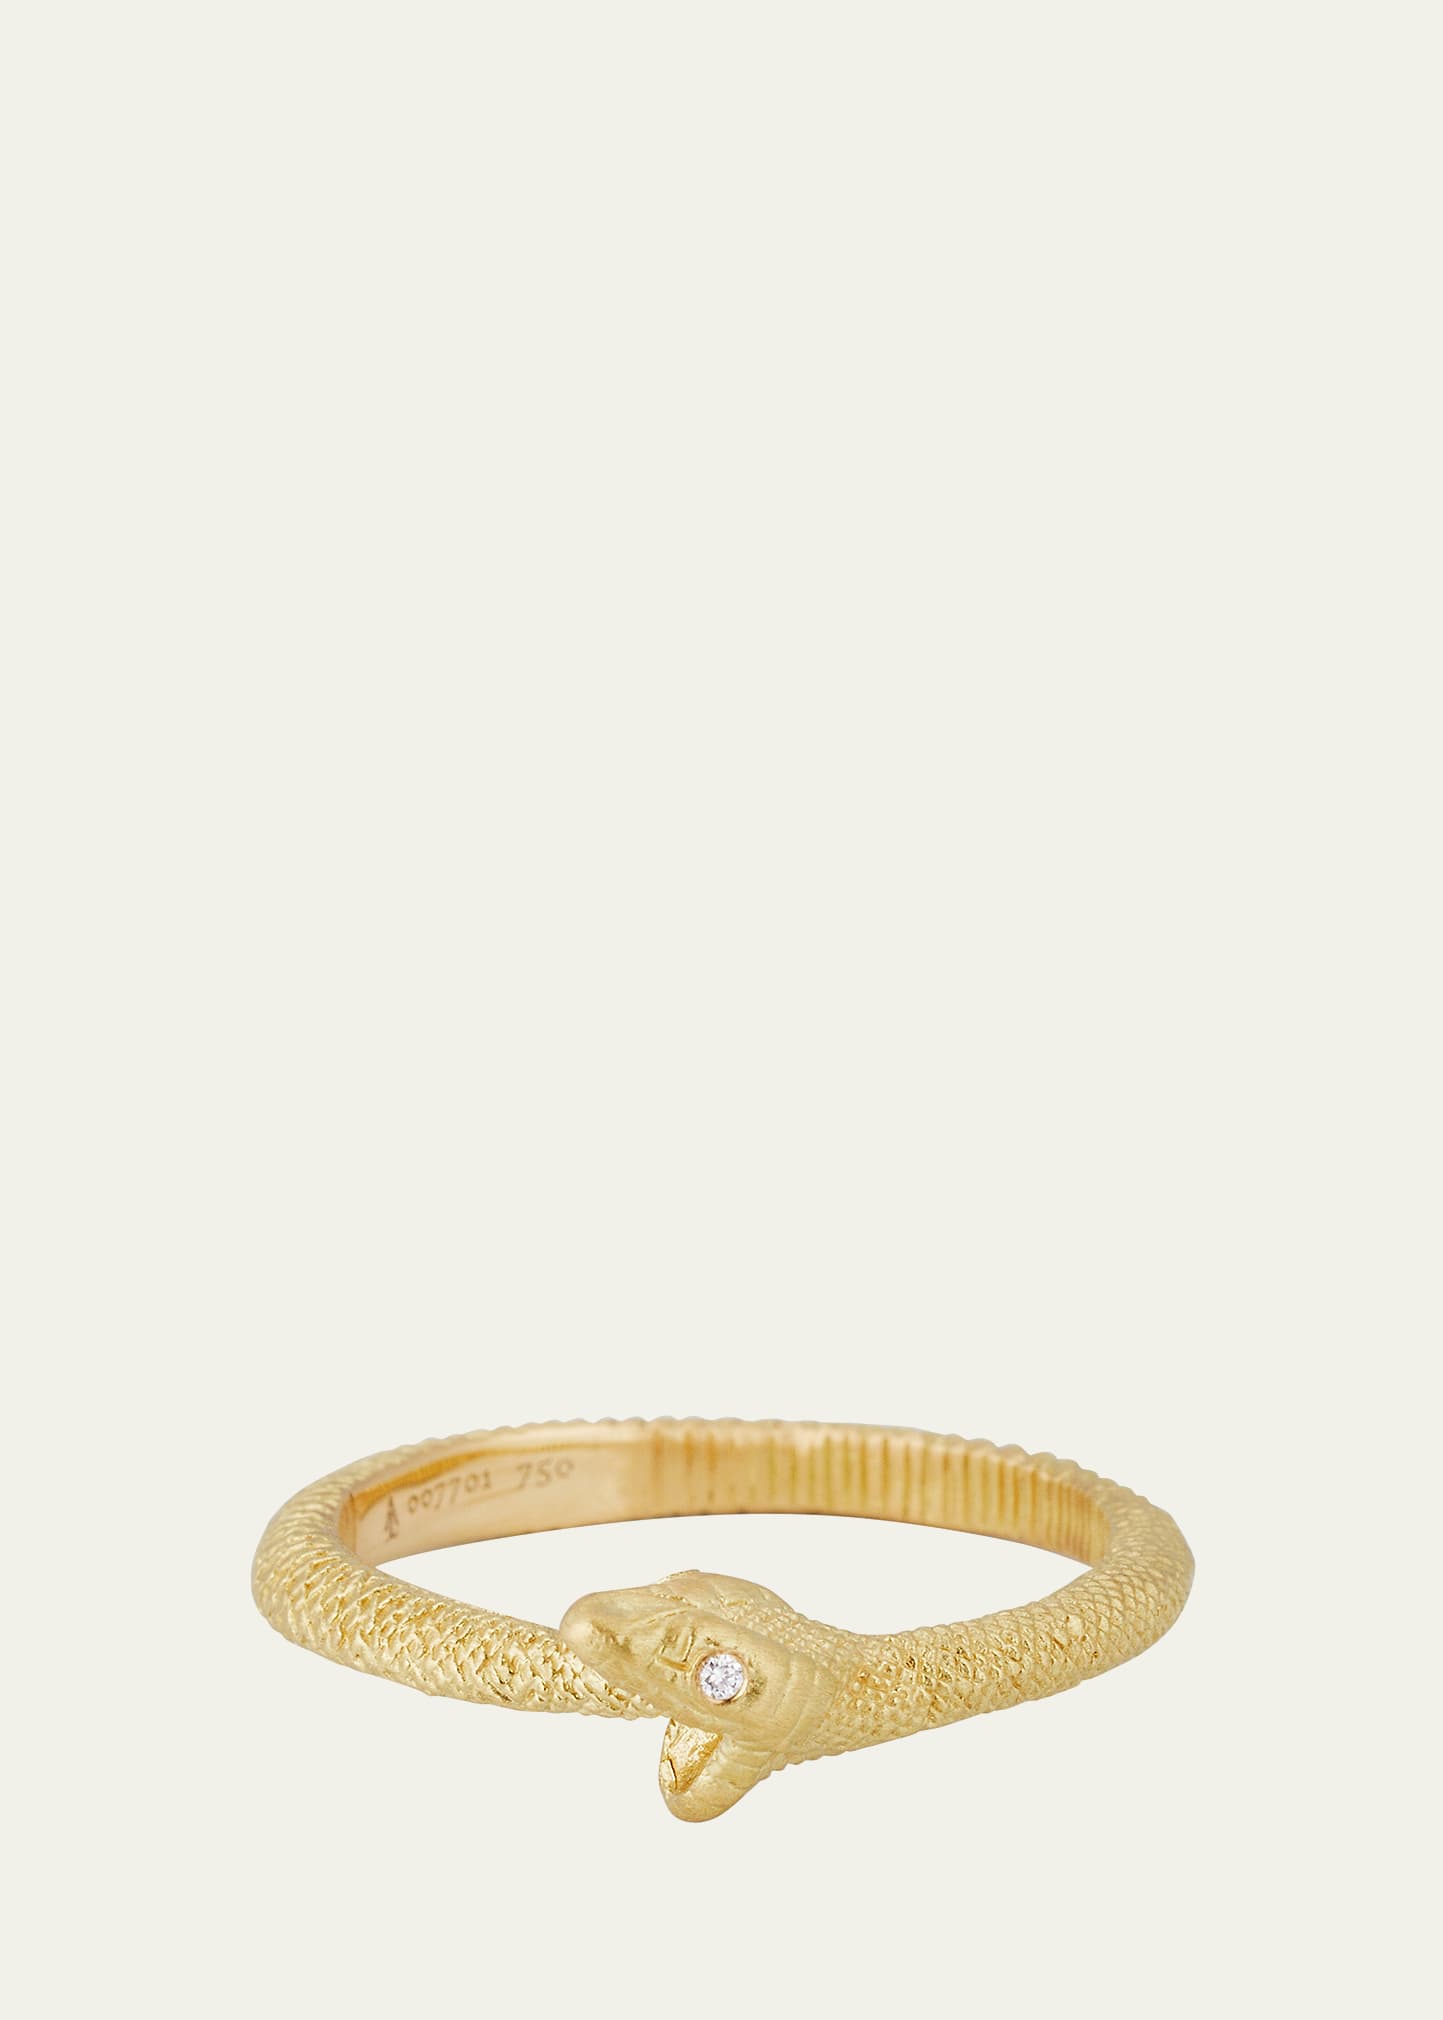 18K Yellow Gold Ouroboros Ring with Diamonds